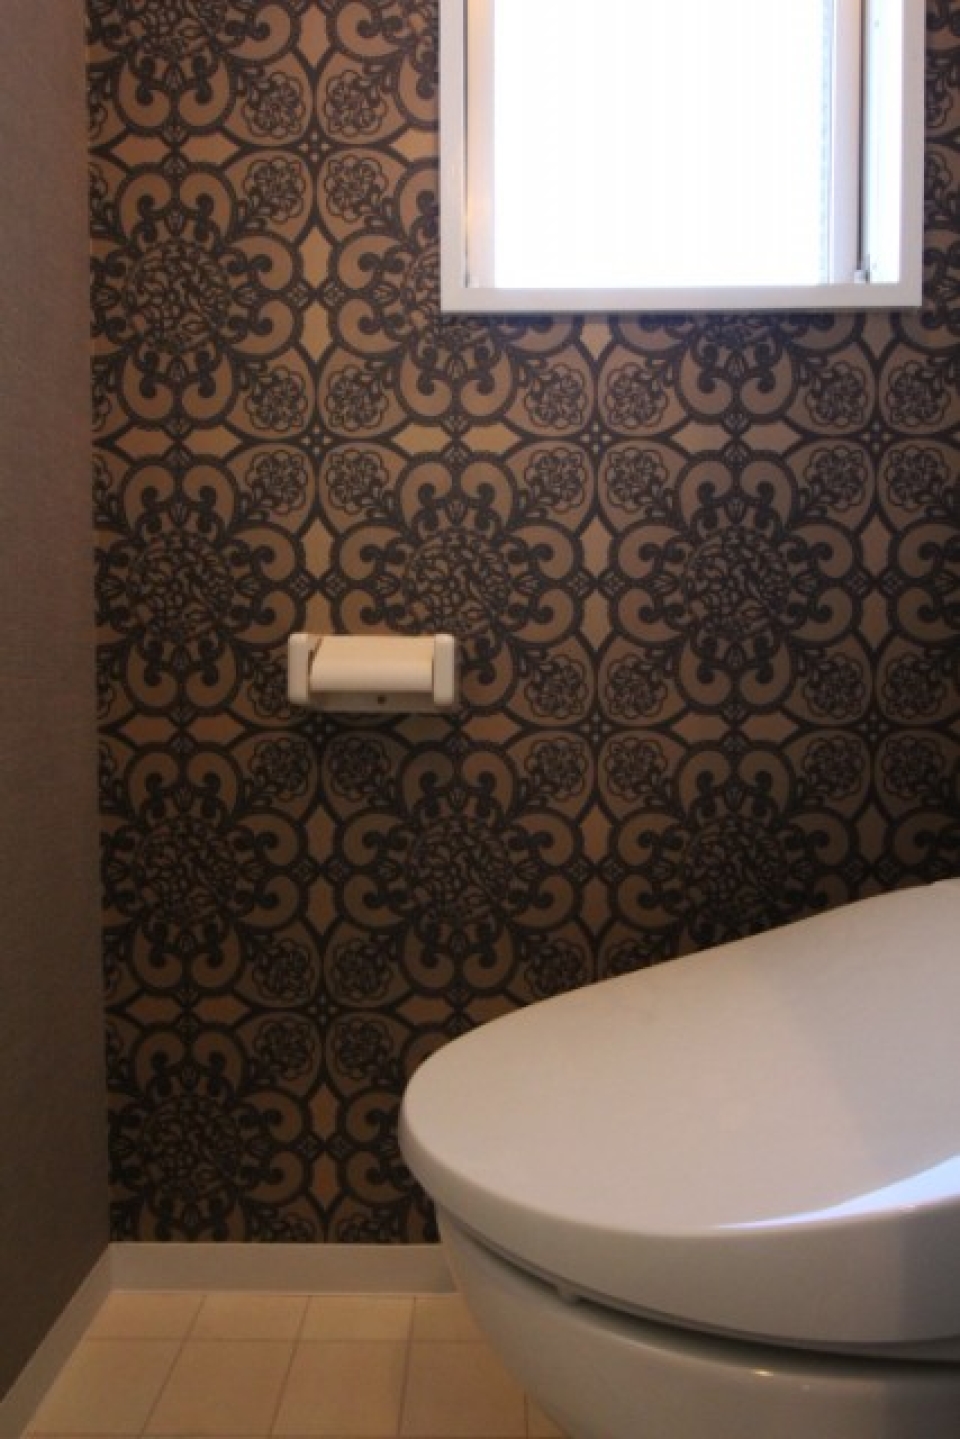 トイレの壁紙がよりクラシカルな雰囲気にさせる。